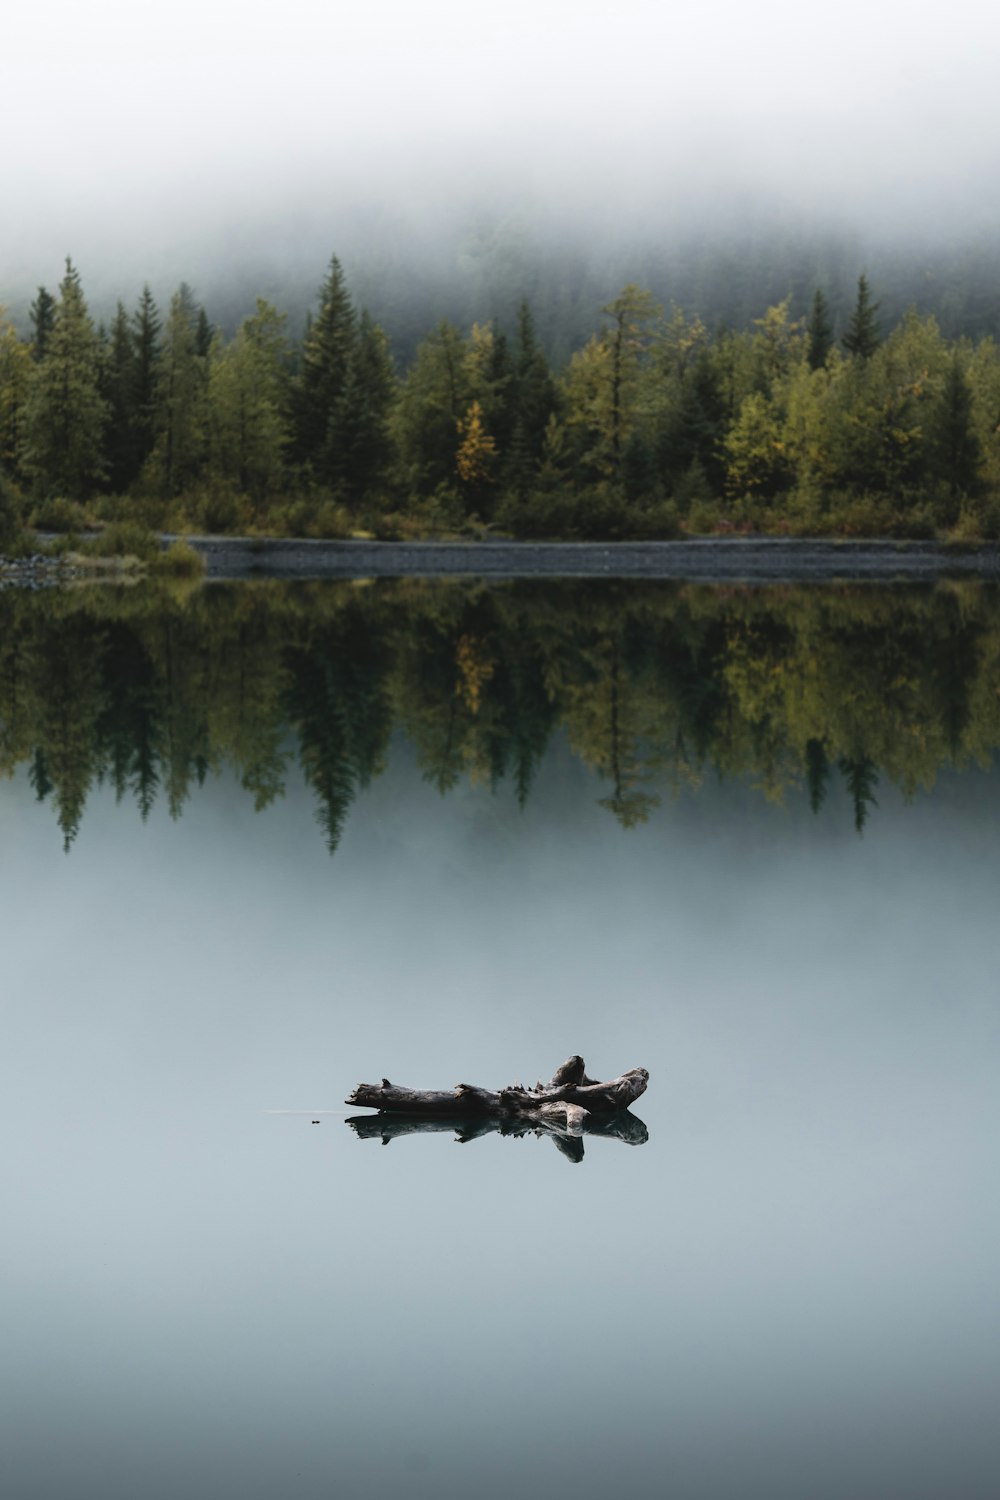 Ein einsames Boot, das auf einem von Wald umgebenen See treibt